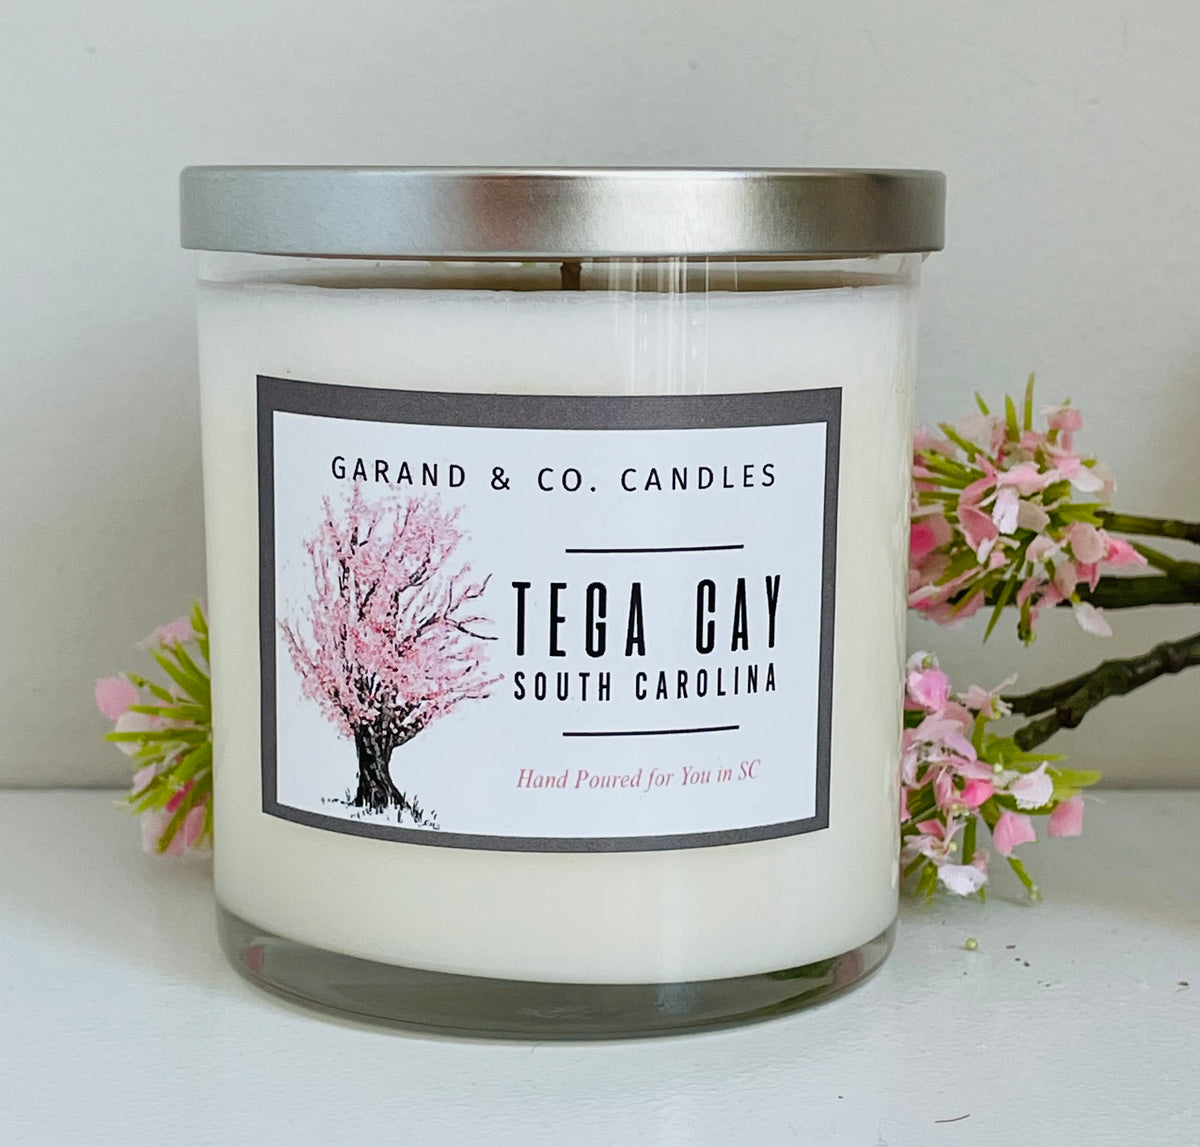 12 oz Clear Glass Jar Candle - Tega Cay, SC Peaches – Garand Candles